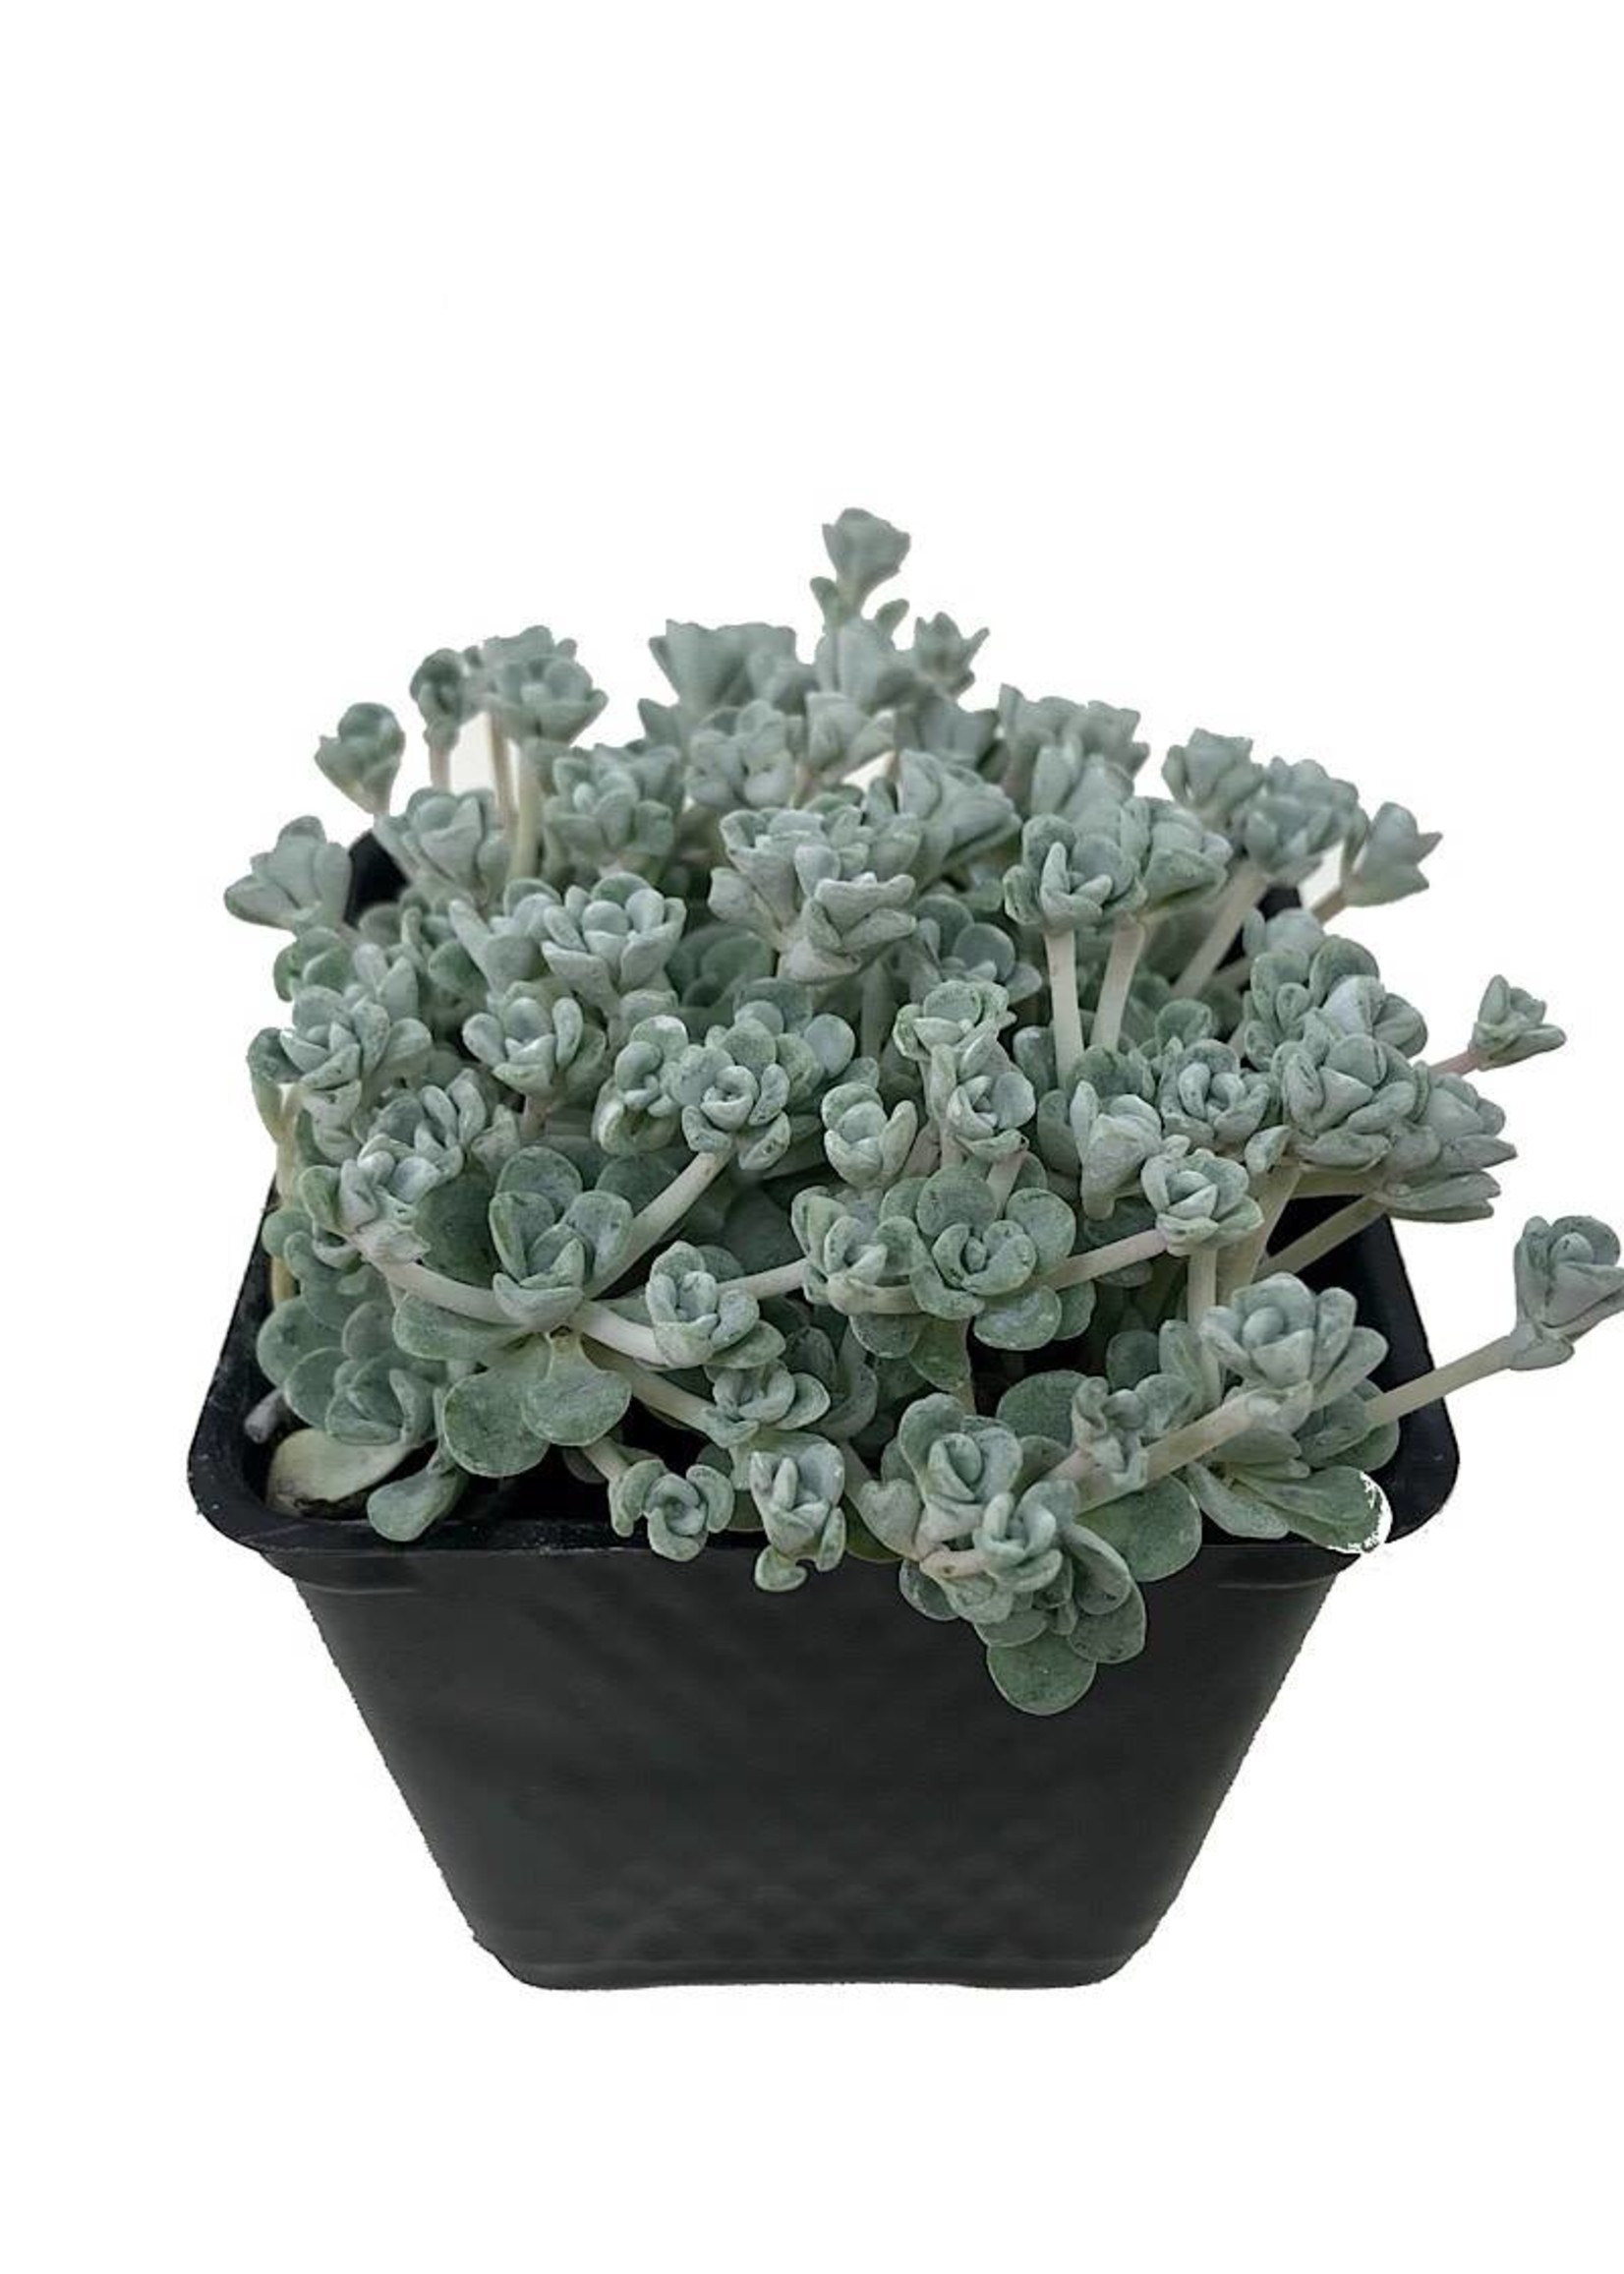 Sedum spathulifolium 'Cape Blanco' 4 Inch